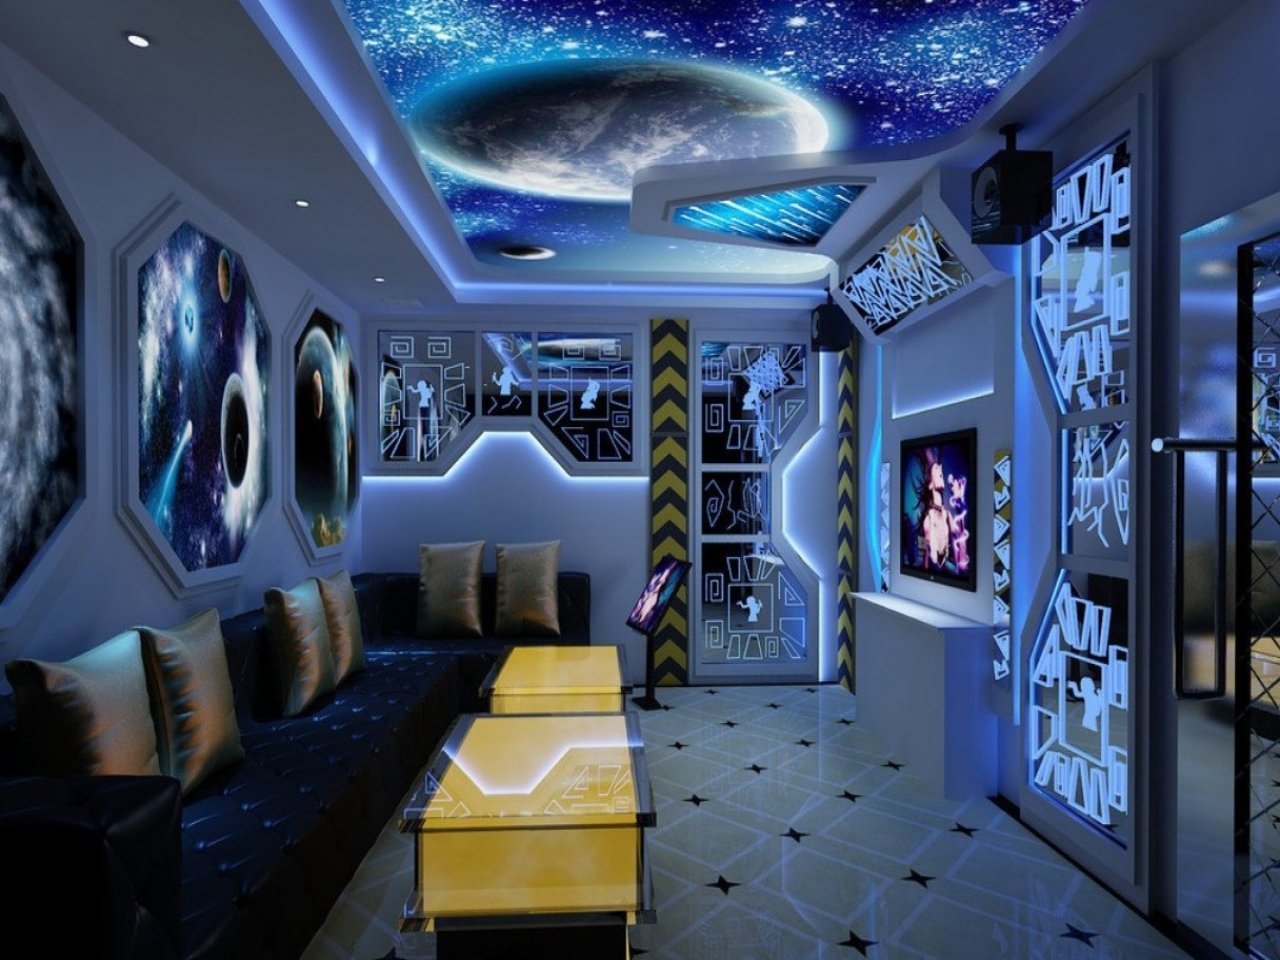 Артистическая комната. Интерьер в стиле космос. Комната в стиле космос. Космический интерьер комнаты. Интерьер в стиле космического корабля.